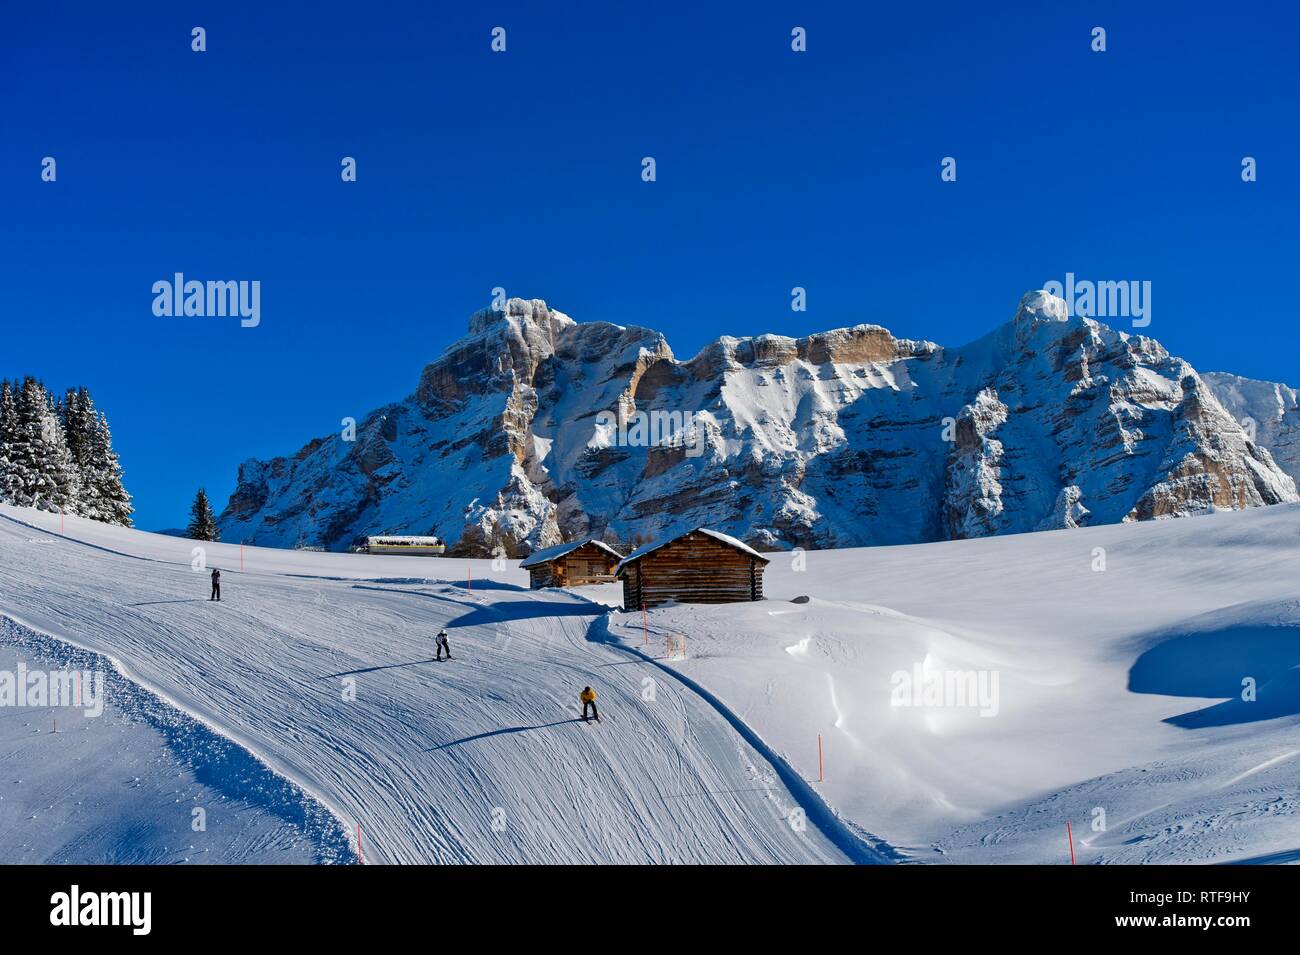 Ski slope in the ski area Alta Badia, Corvara, South Tyrol, Italy Stock Photo